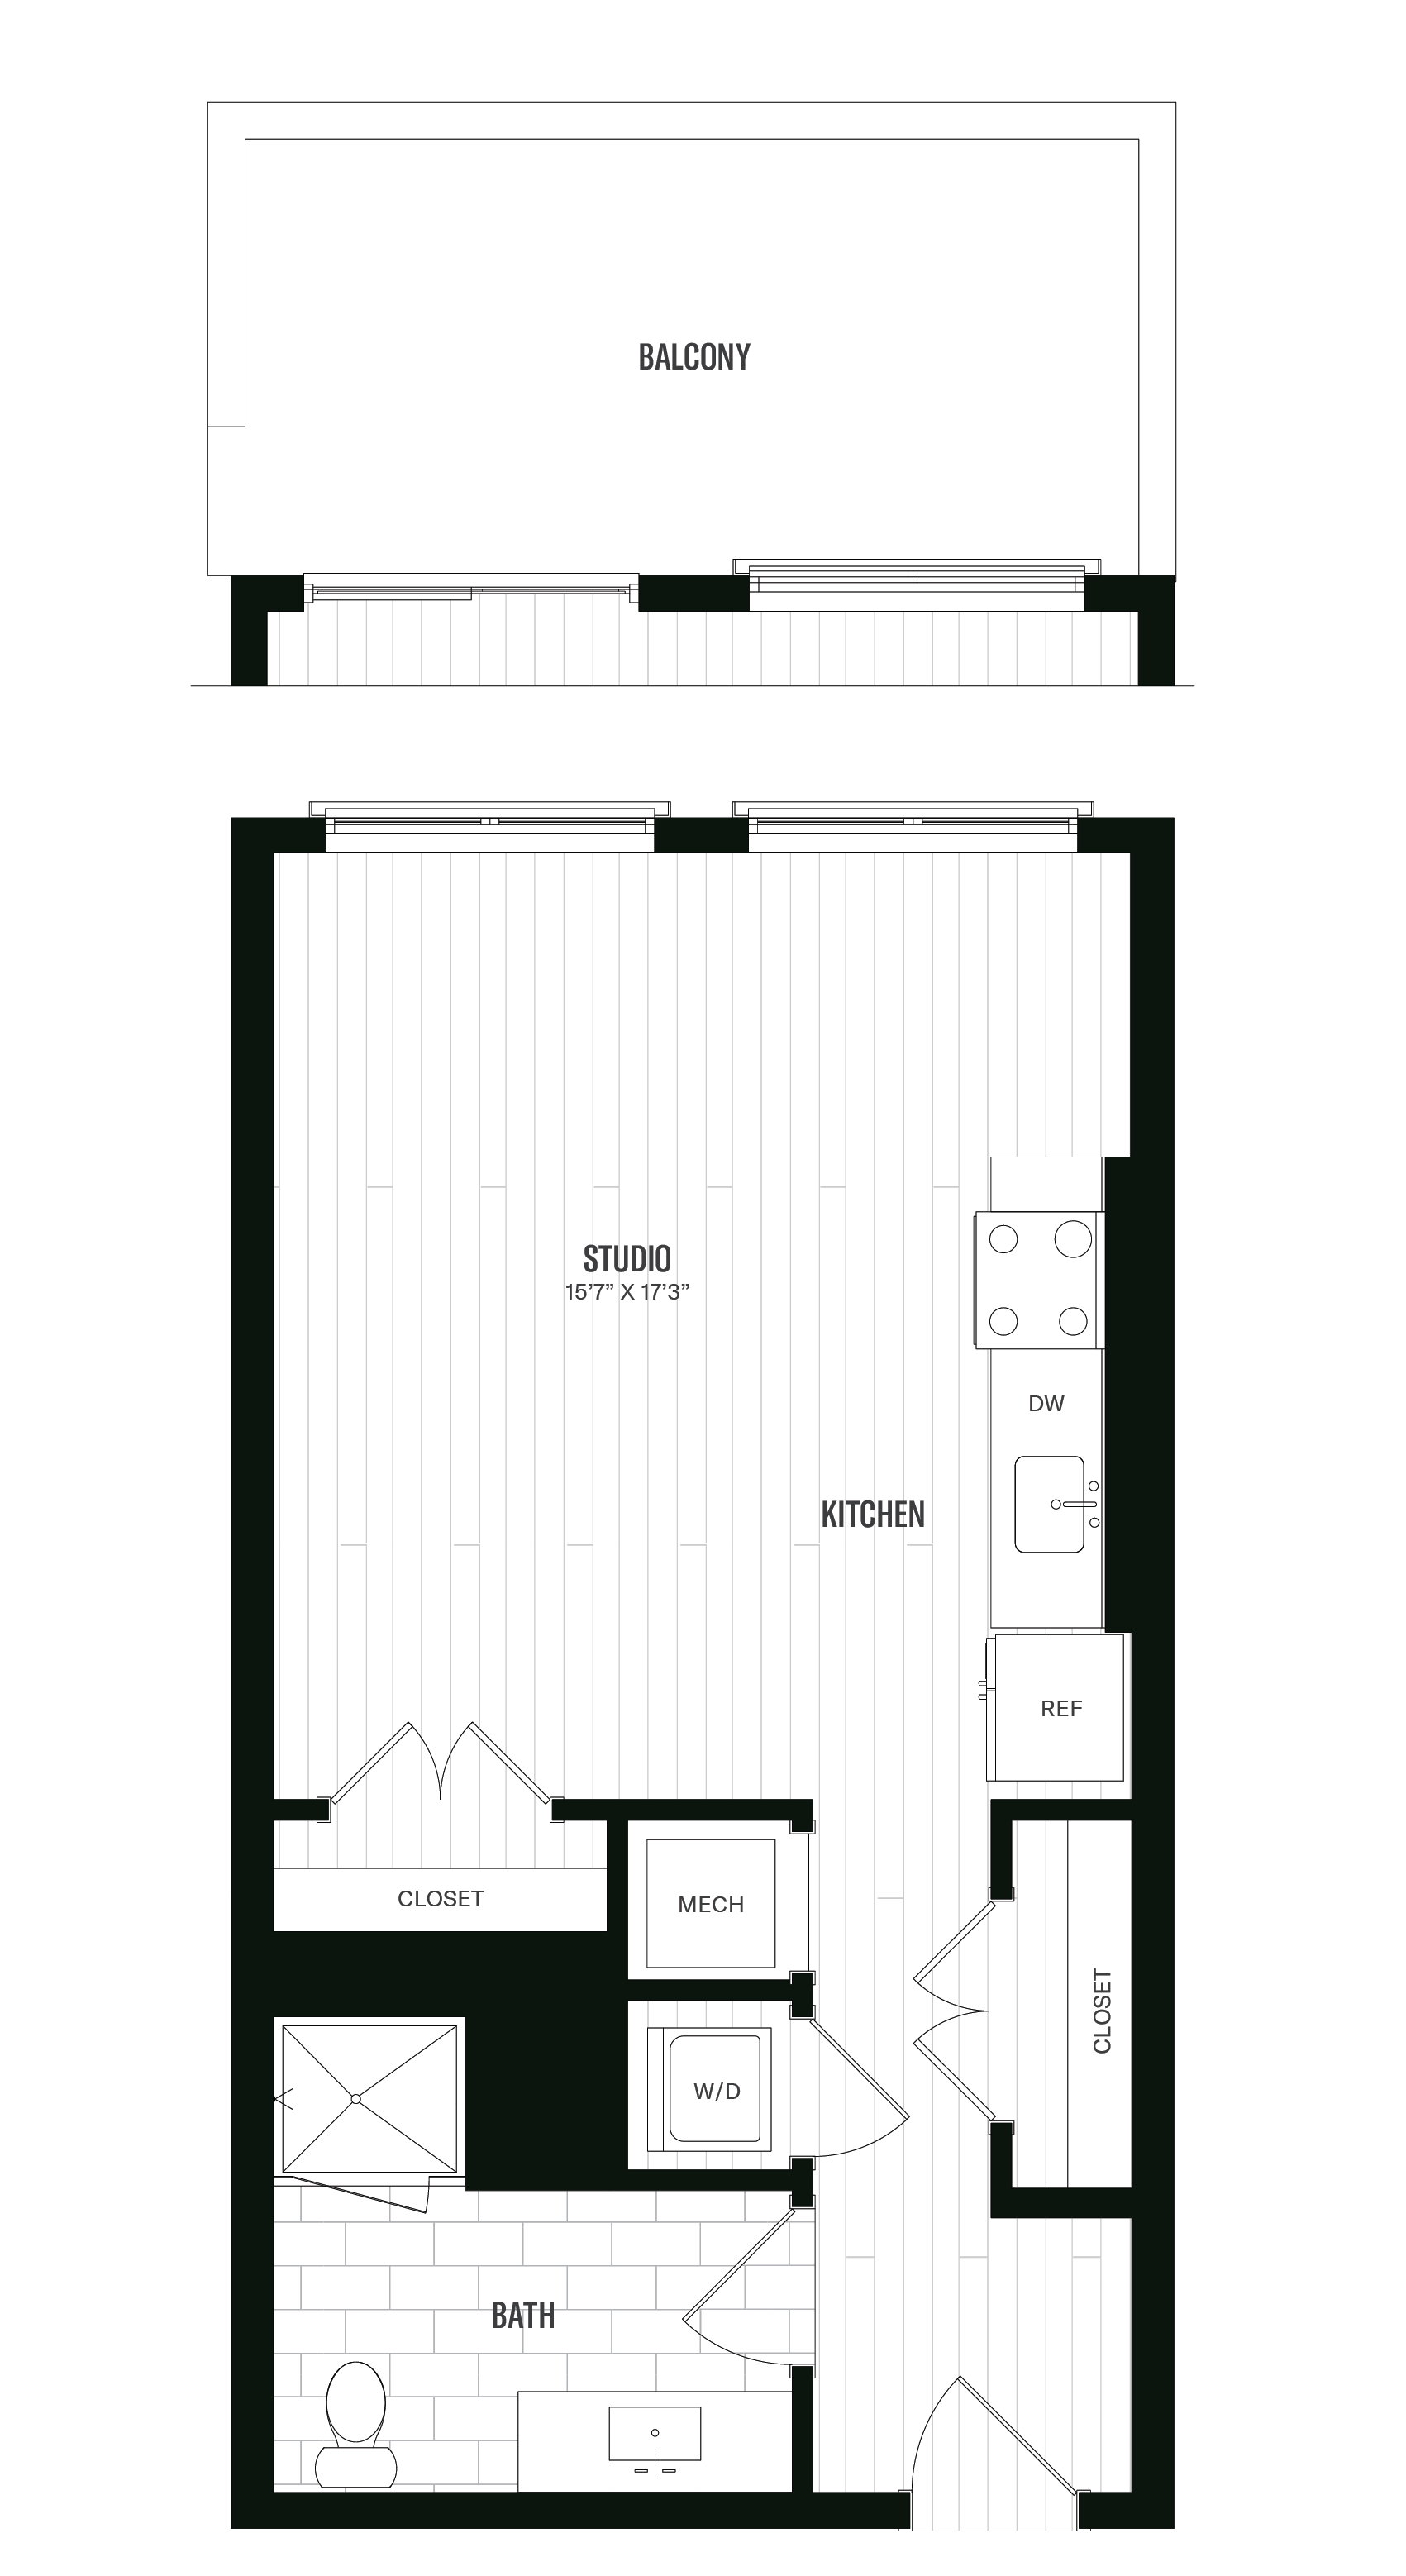 Floorplan image of unit 505